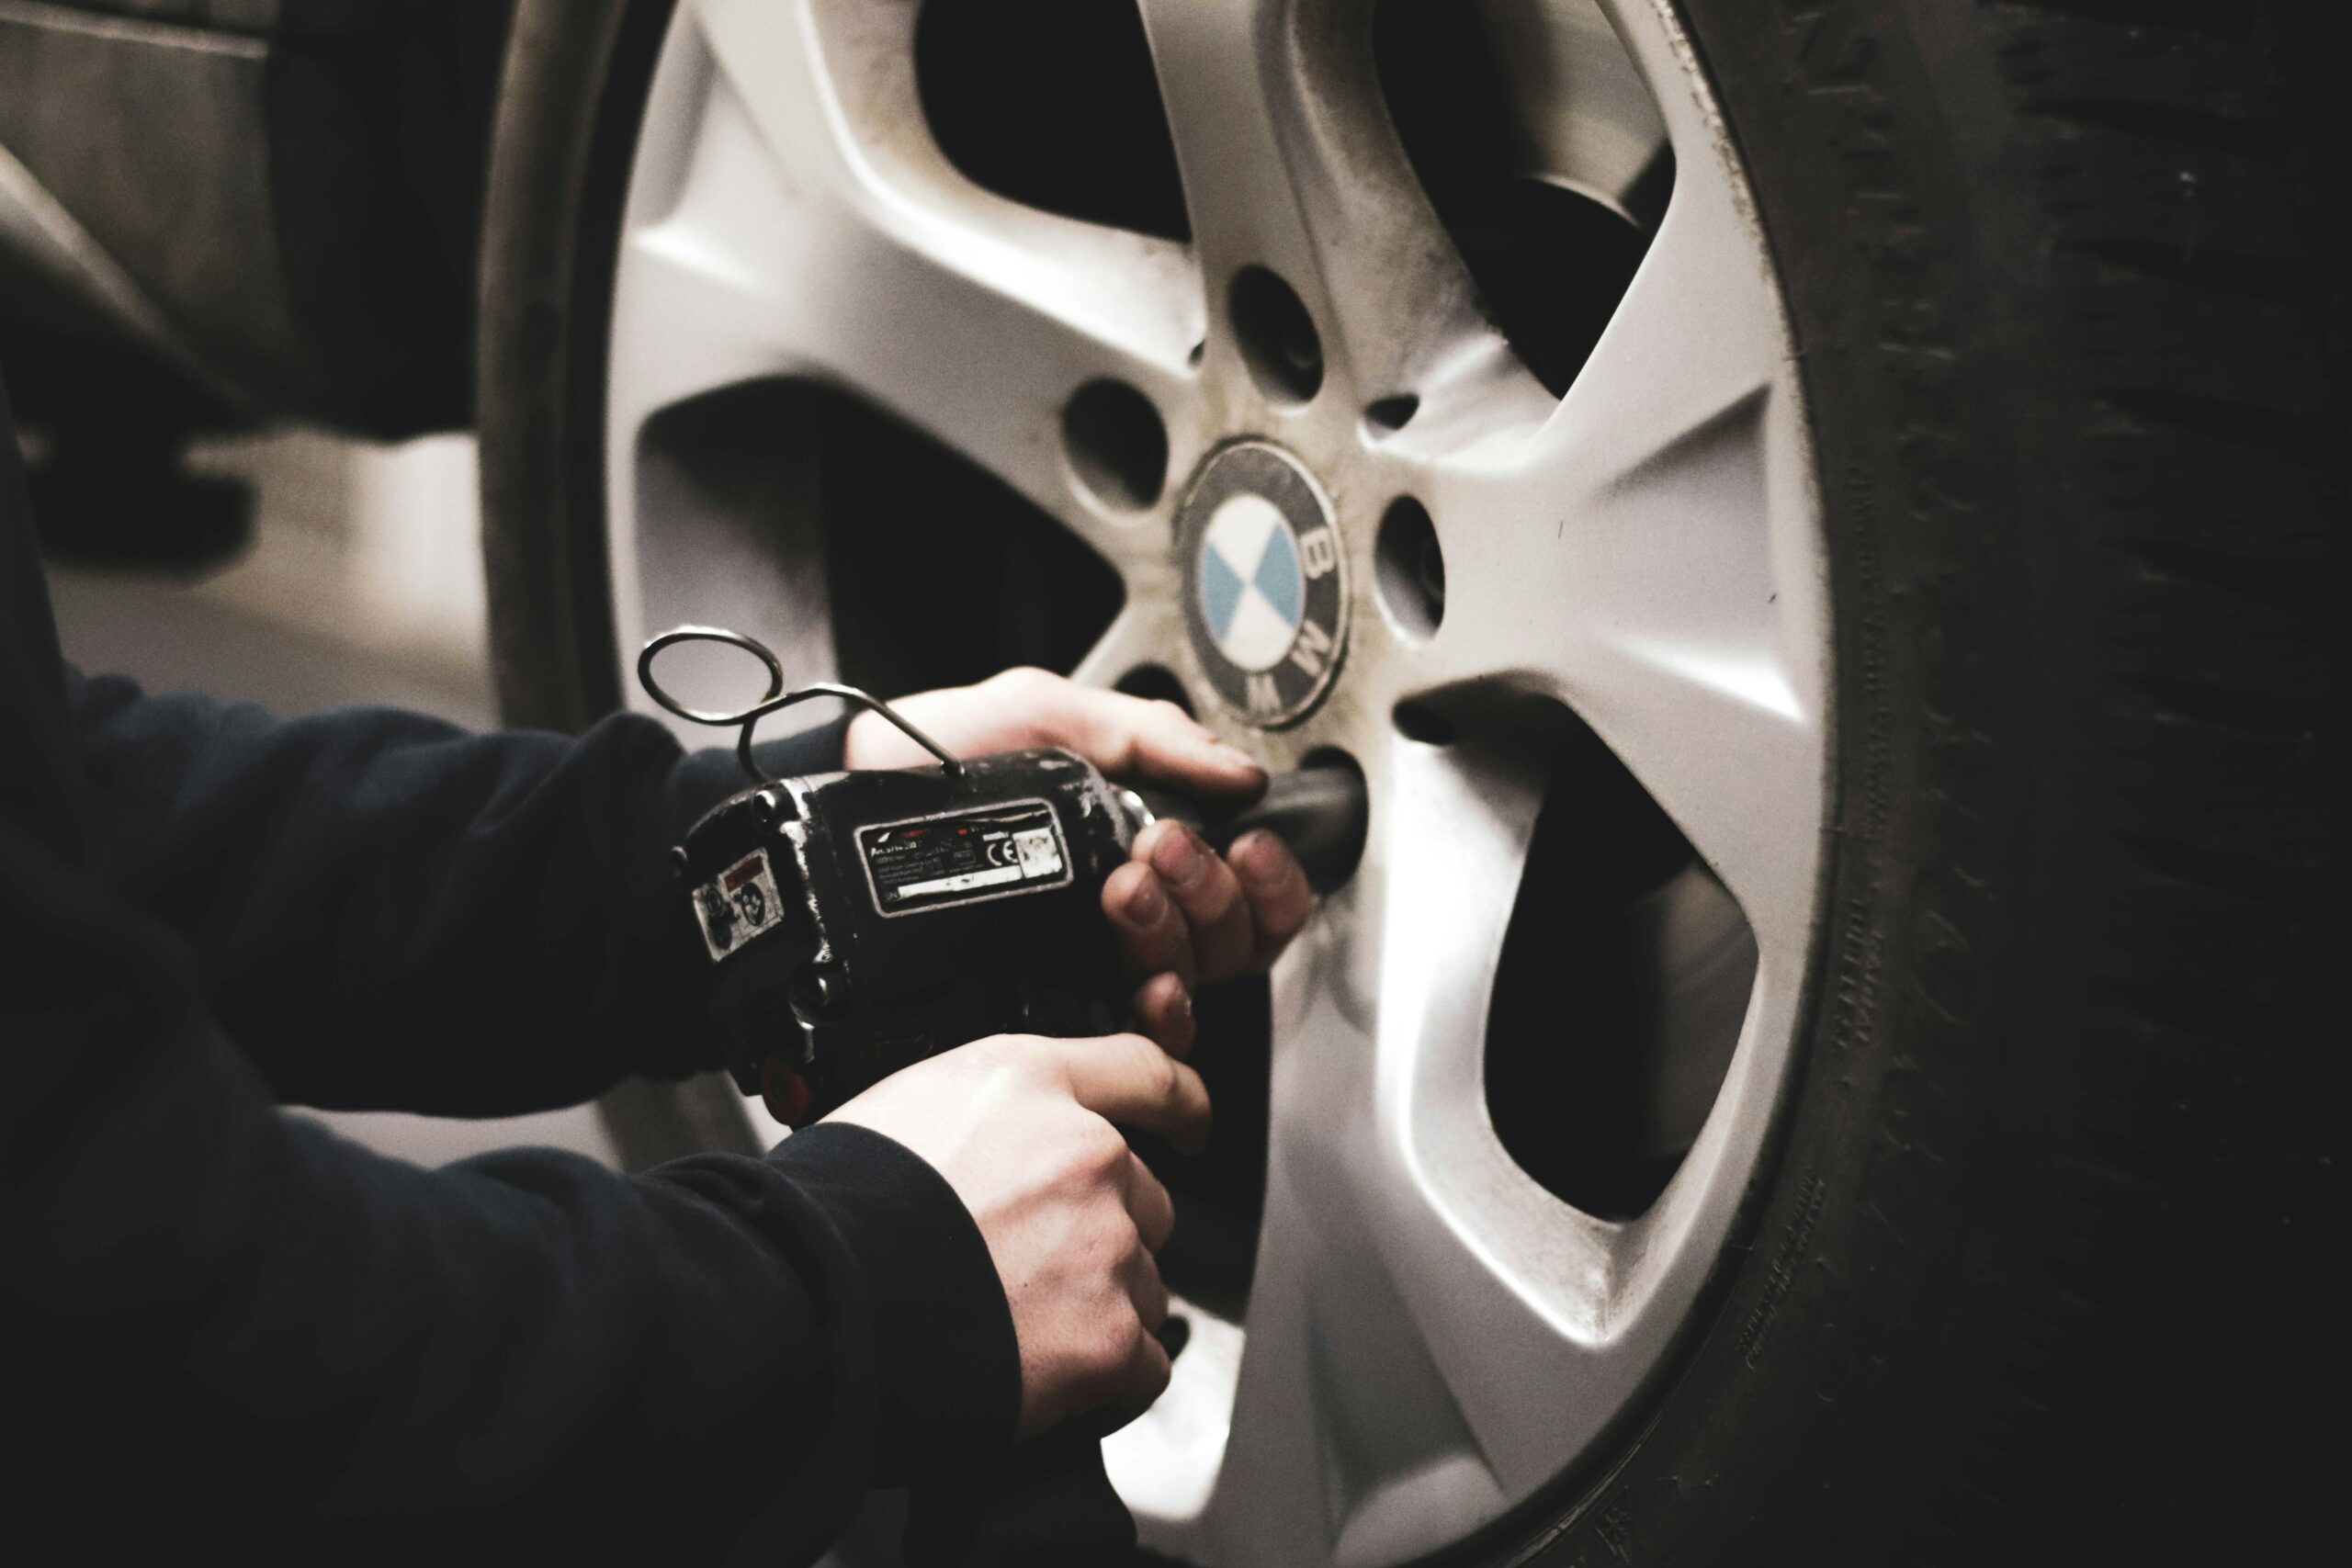 Přečtete si více ze článku Evropská komise podezírá výrobce pneumatik z cenového kartelu